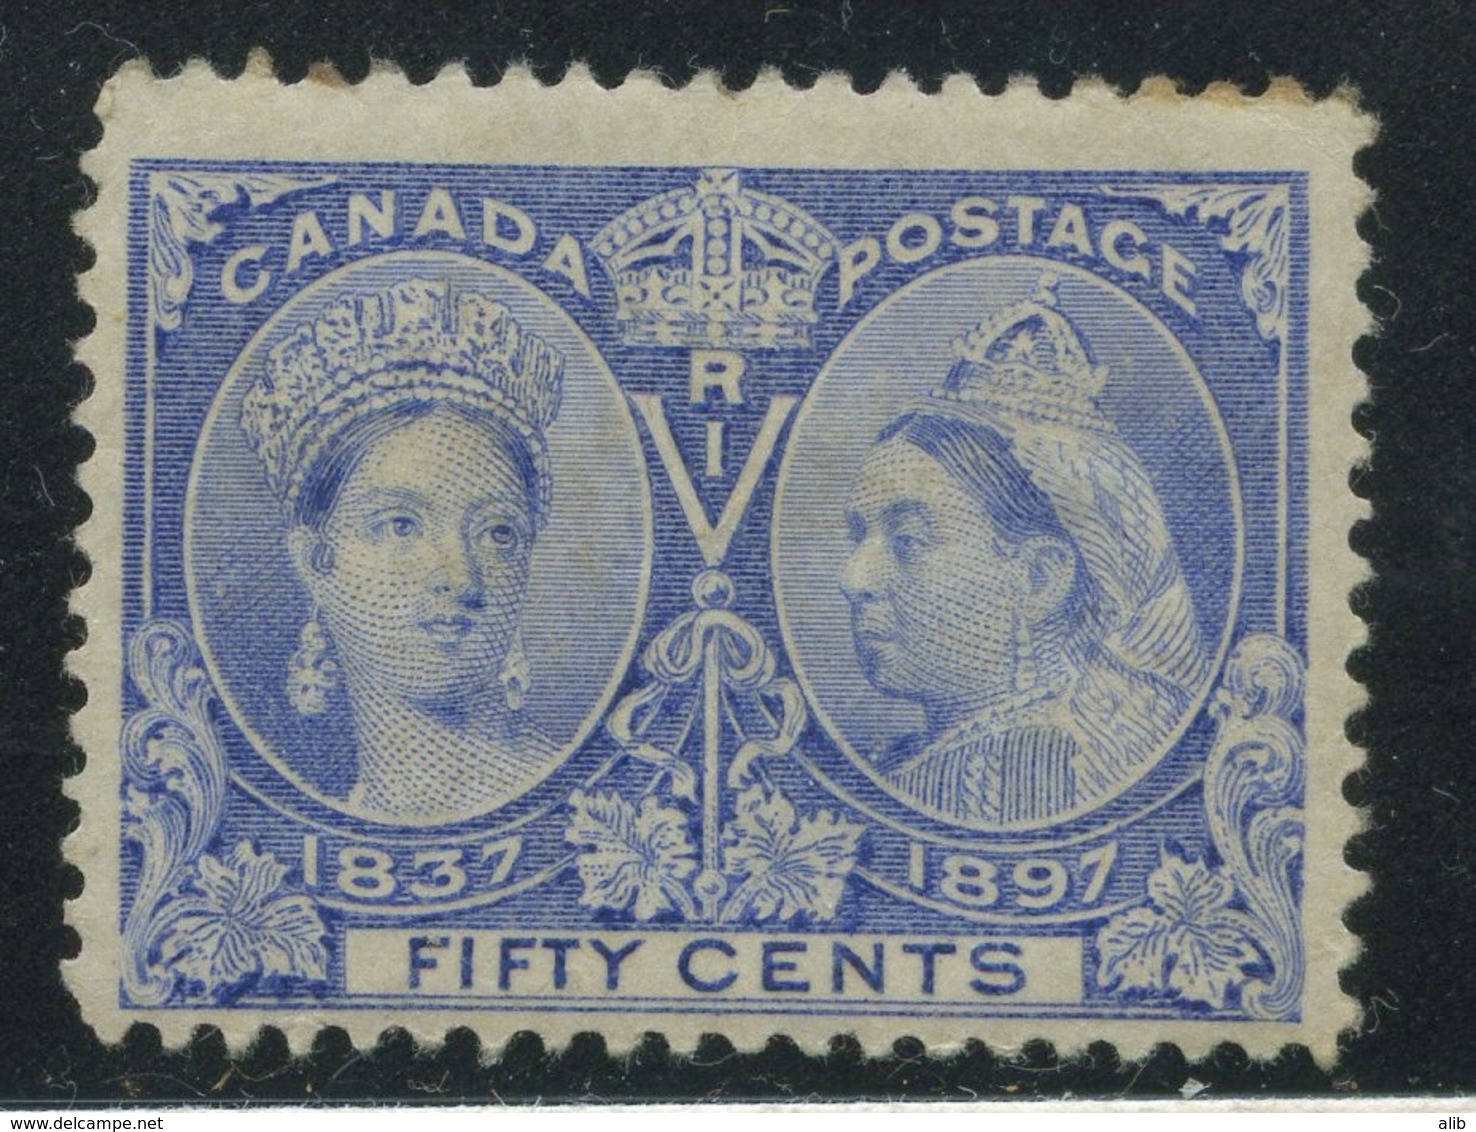 Canada 1897 Jubilee issue small range unused